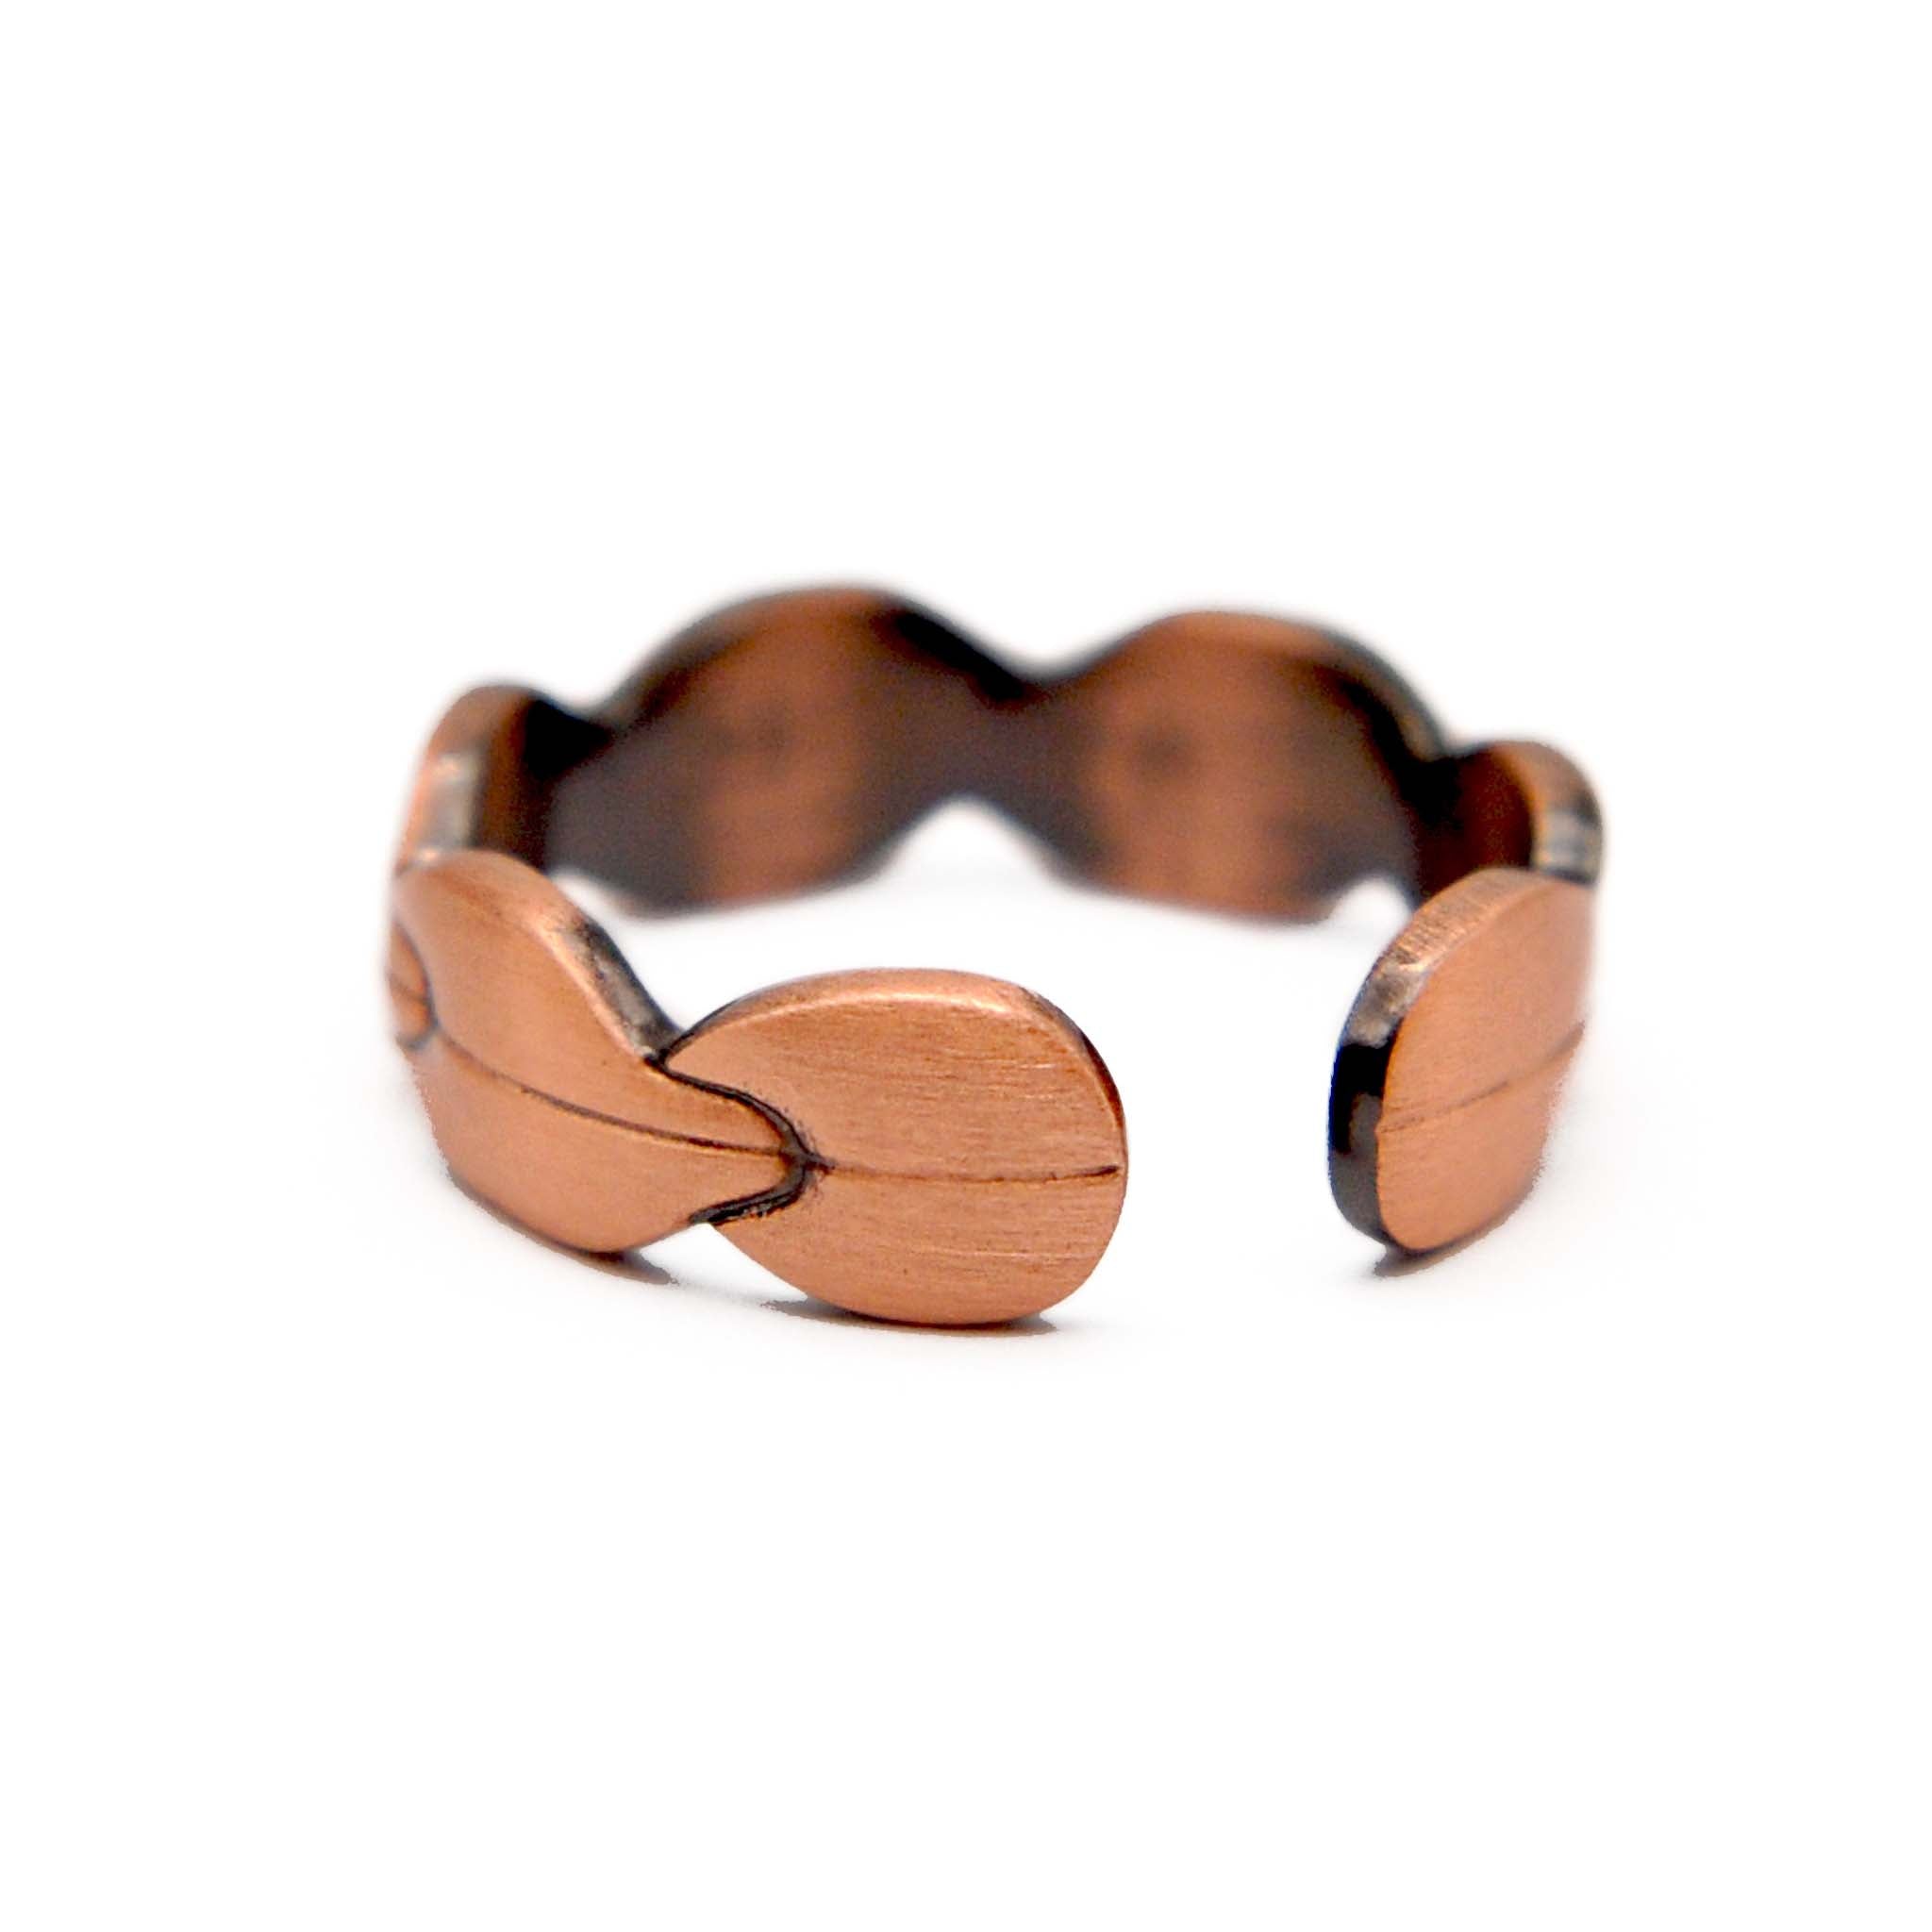 Copper ring for men